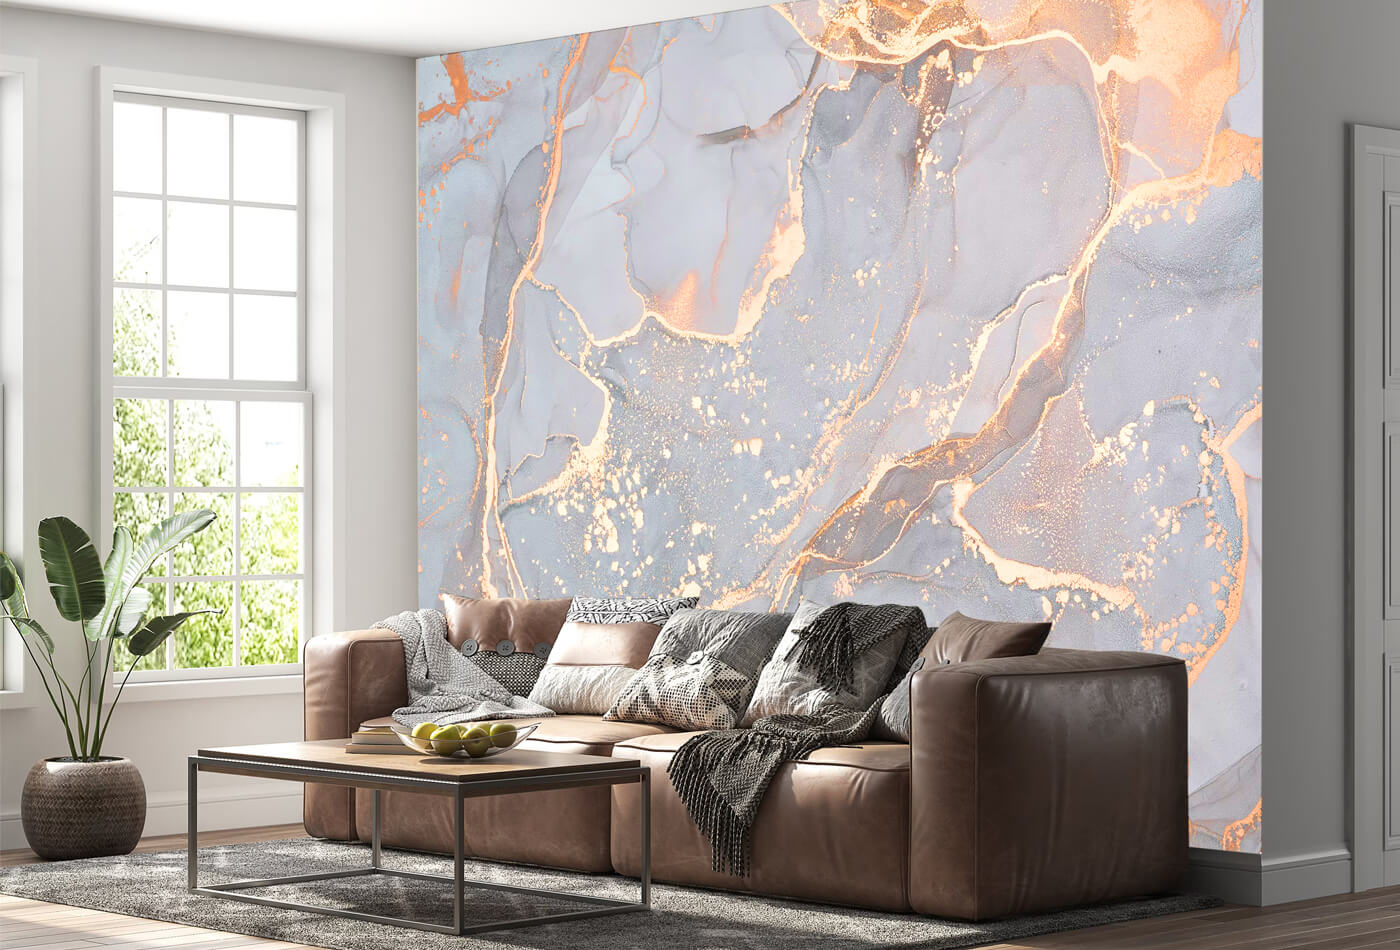 Golden White Splashback Wall Art In The Living Room